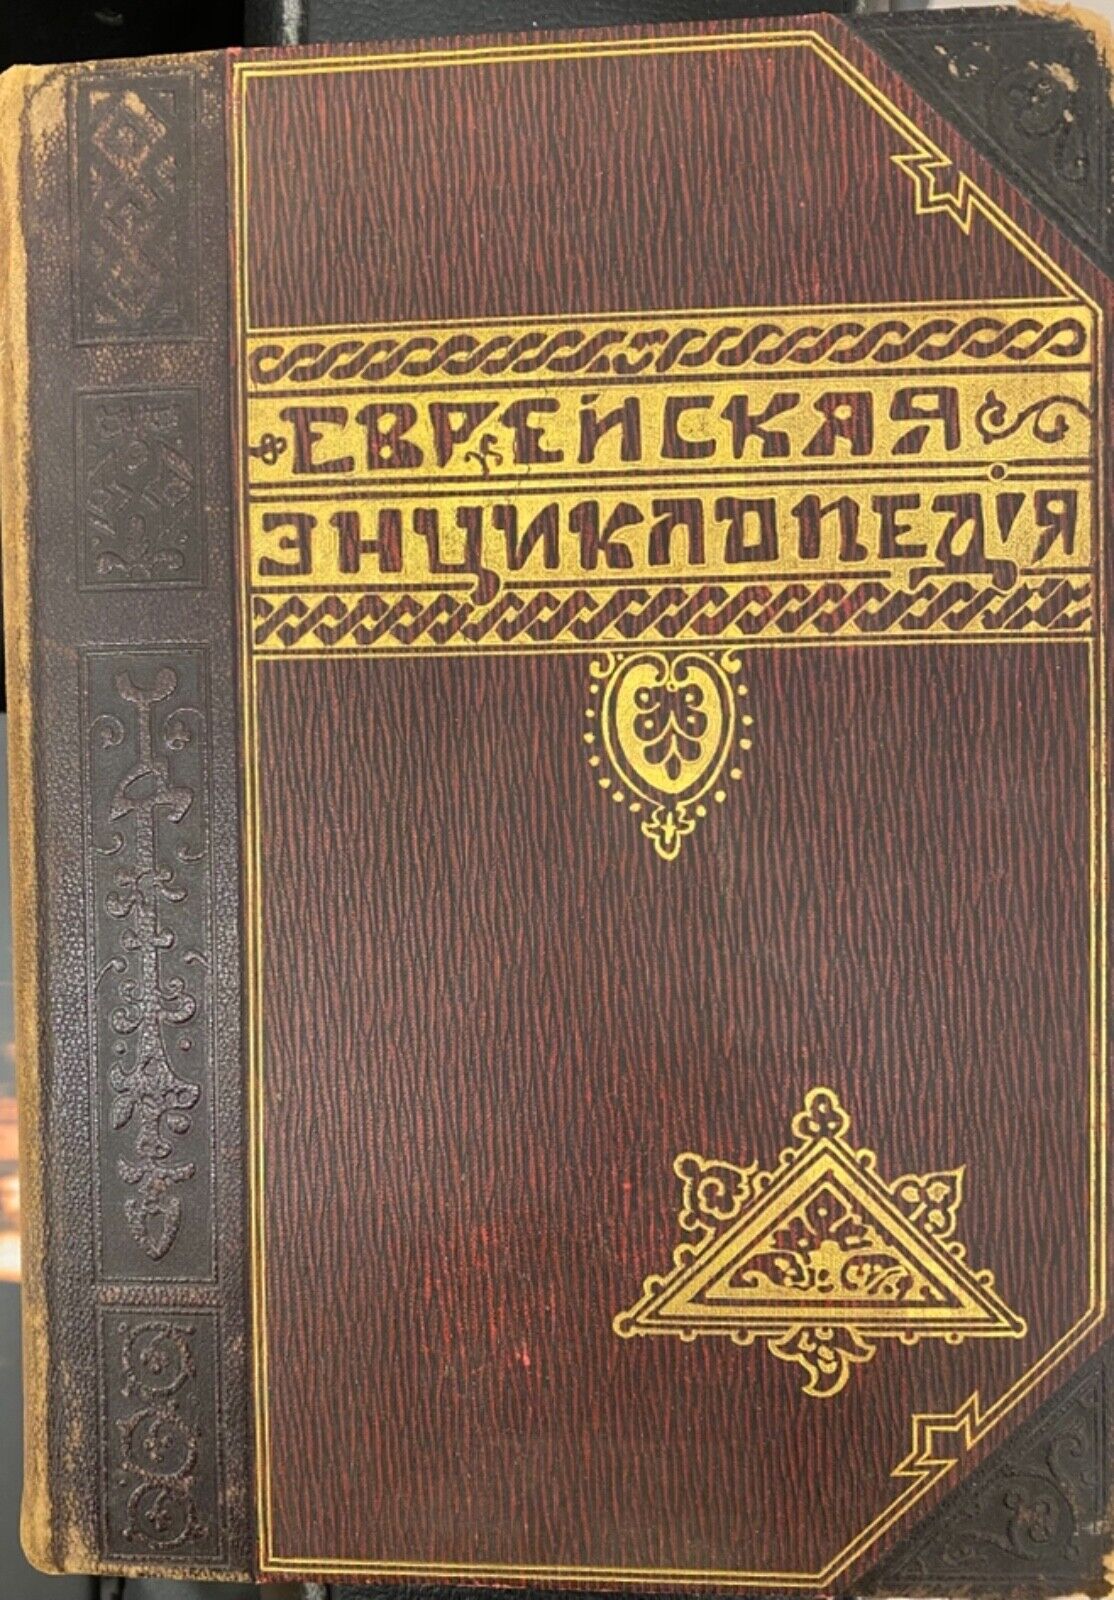 SUPER RARE RUSSIAN JEWISH ENCYCLOPEDIA 16 VOL 1906 COMPLETE SET